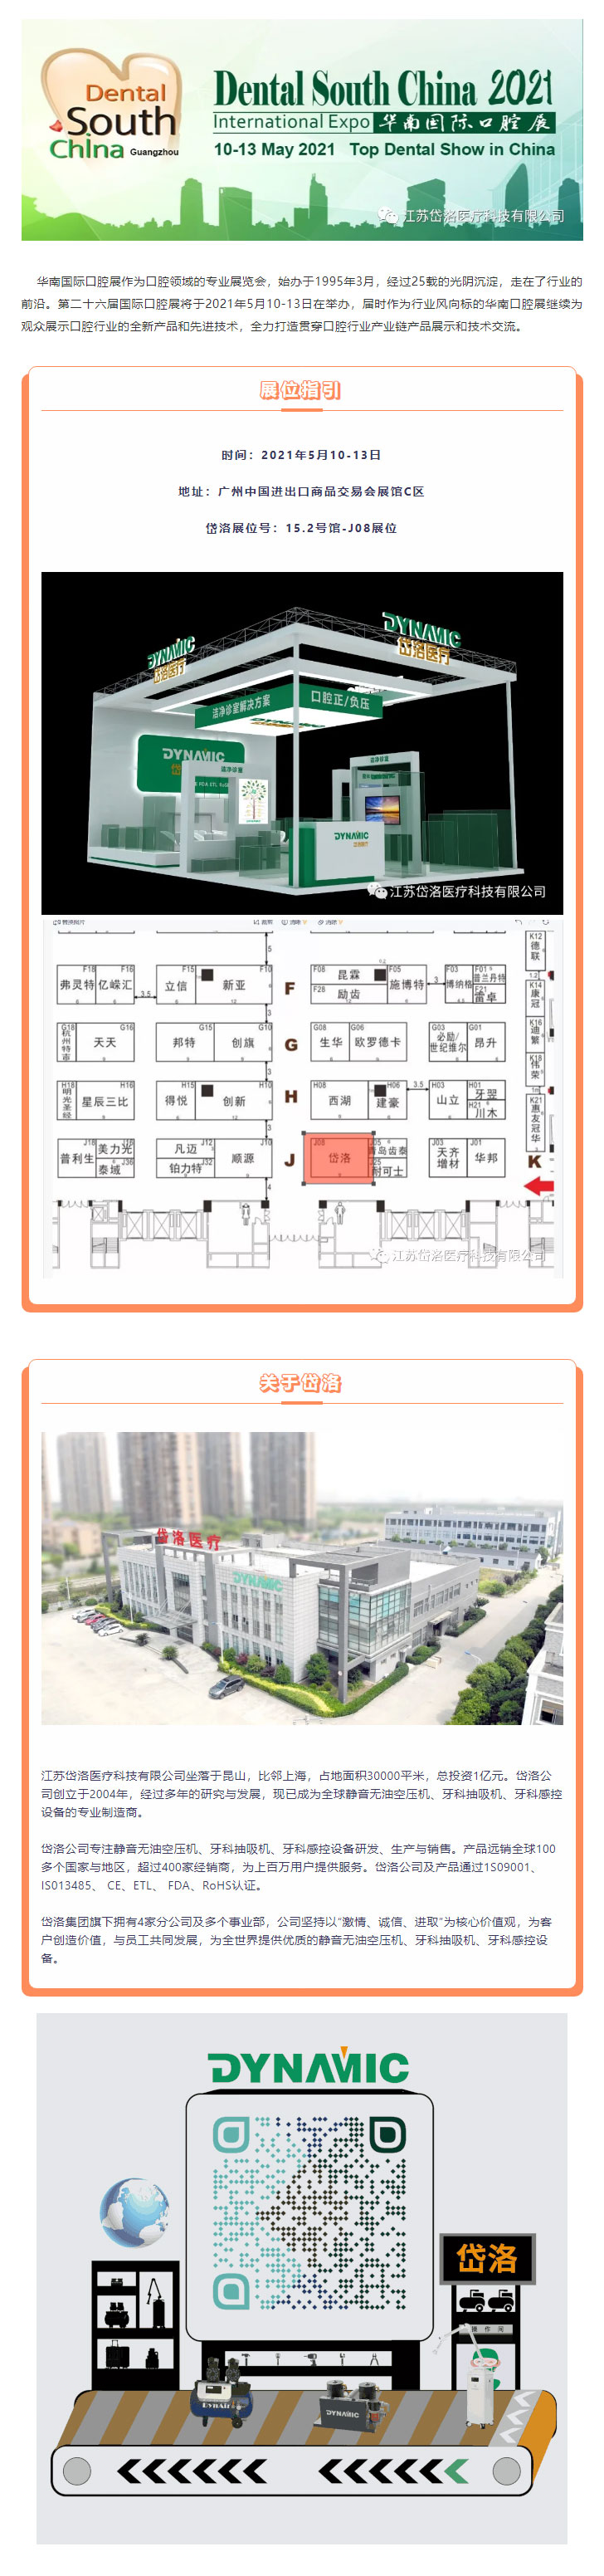 2021年華南口腔展--博马APP醫療展位號15